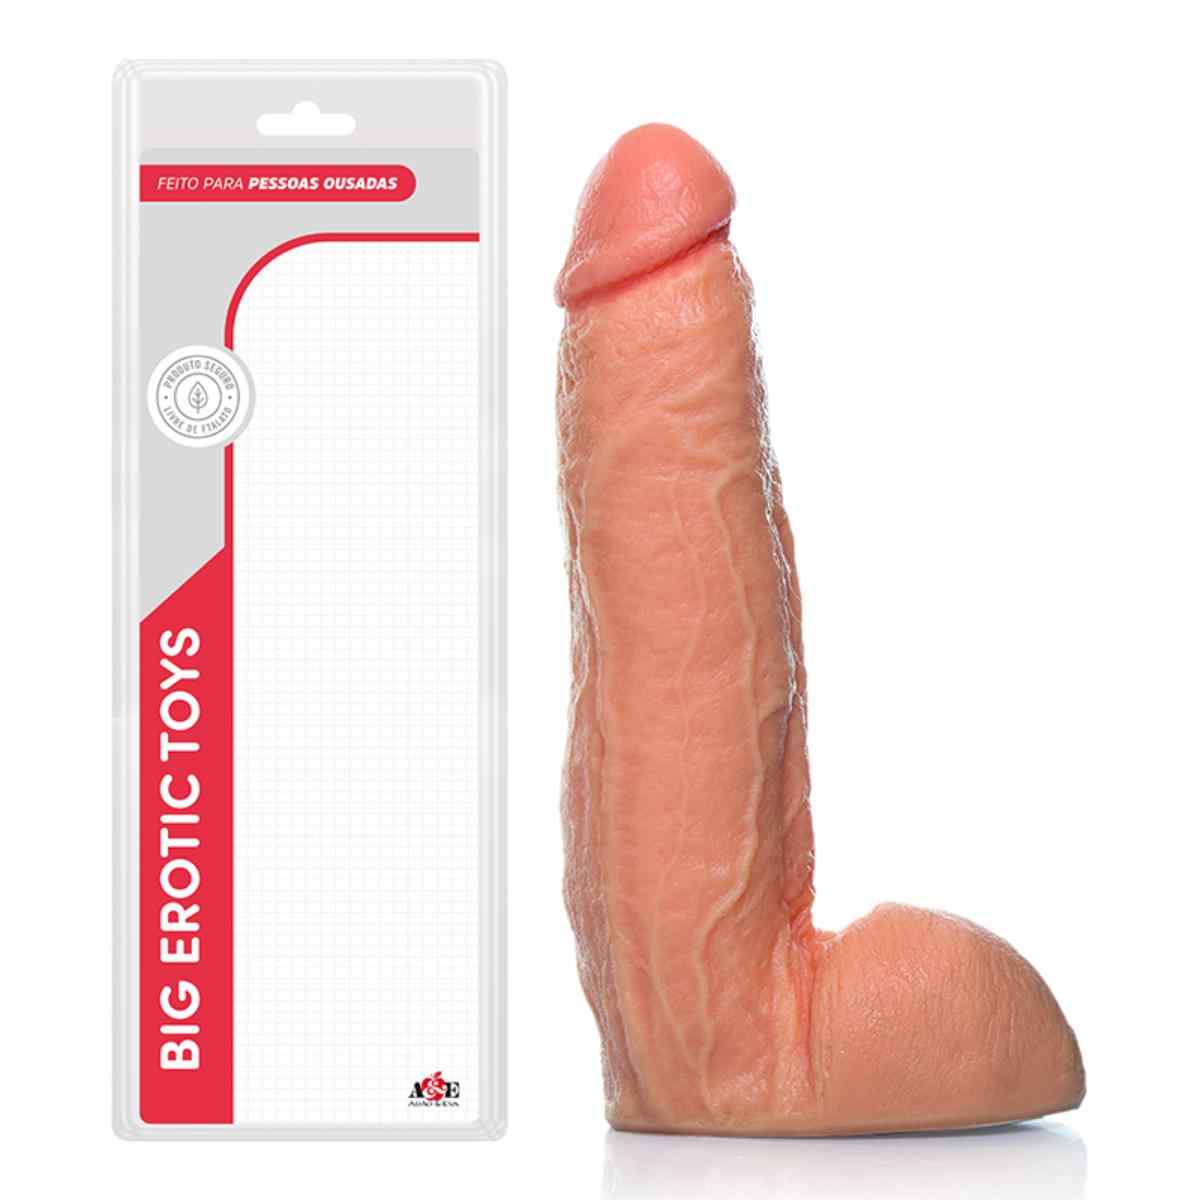 Pênis realístico grande e grosso porno com 27X5,5 cm